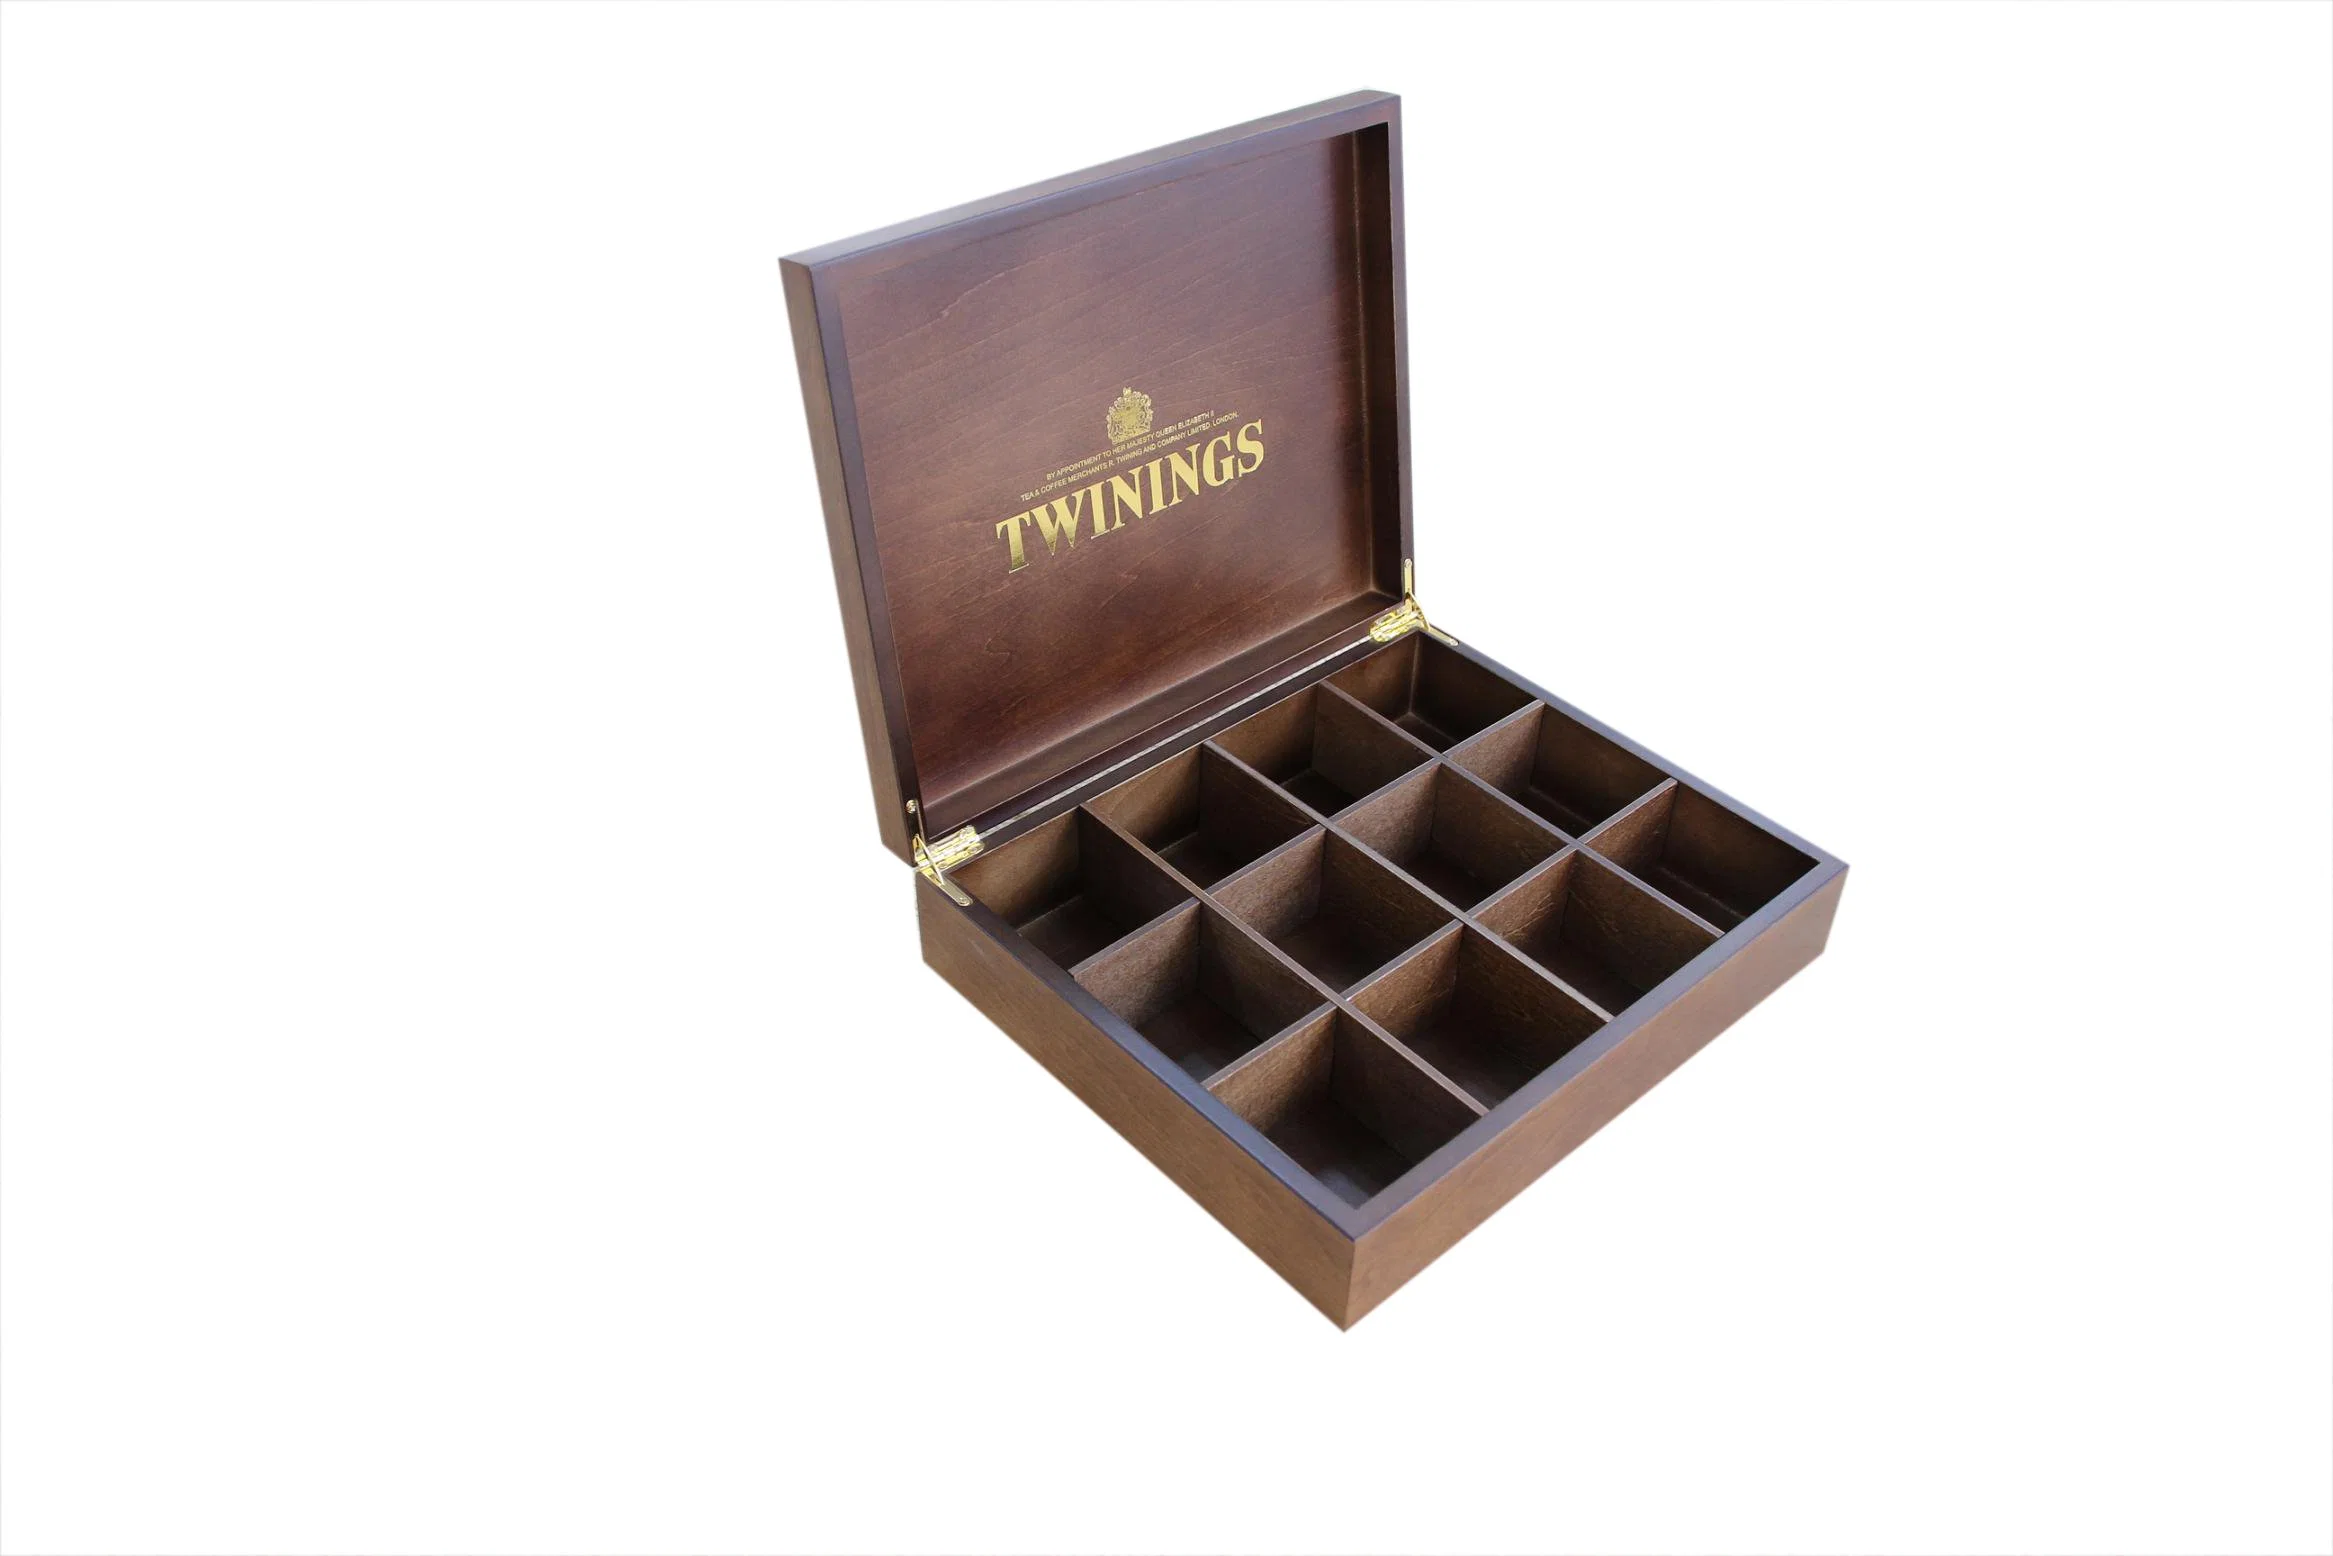 Handgemachte Twinings Dark Wood Tee Geschenk Verpackung Box, Holz Teebeutel Aufbewahrungsbox und Organizer, handgefertigte Holz Tee Geschenk Verpackung und Truhe Boxen